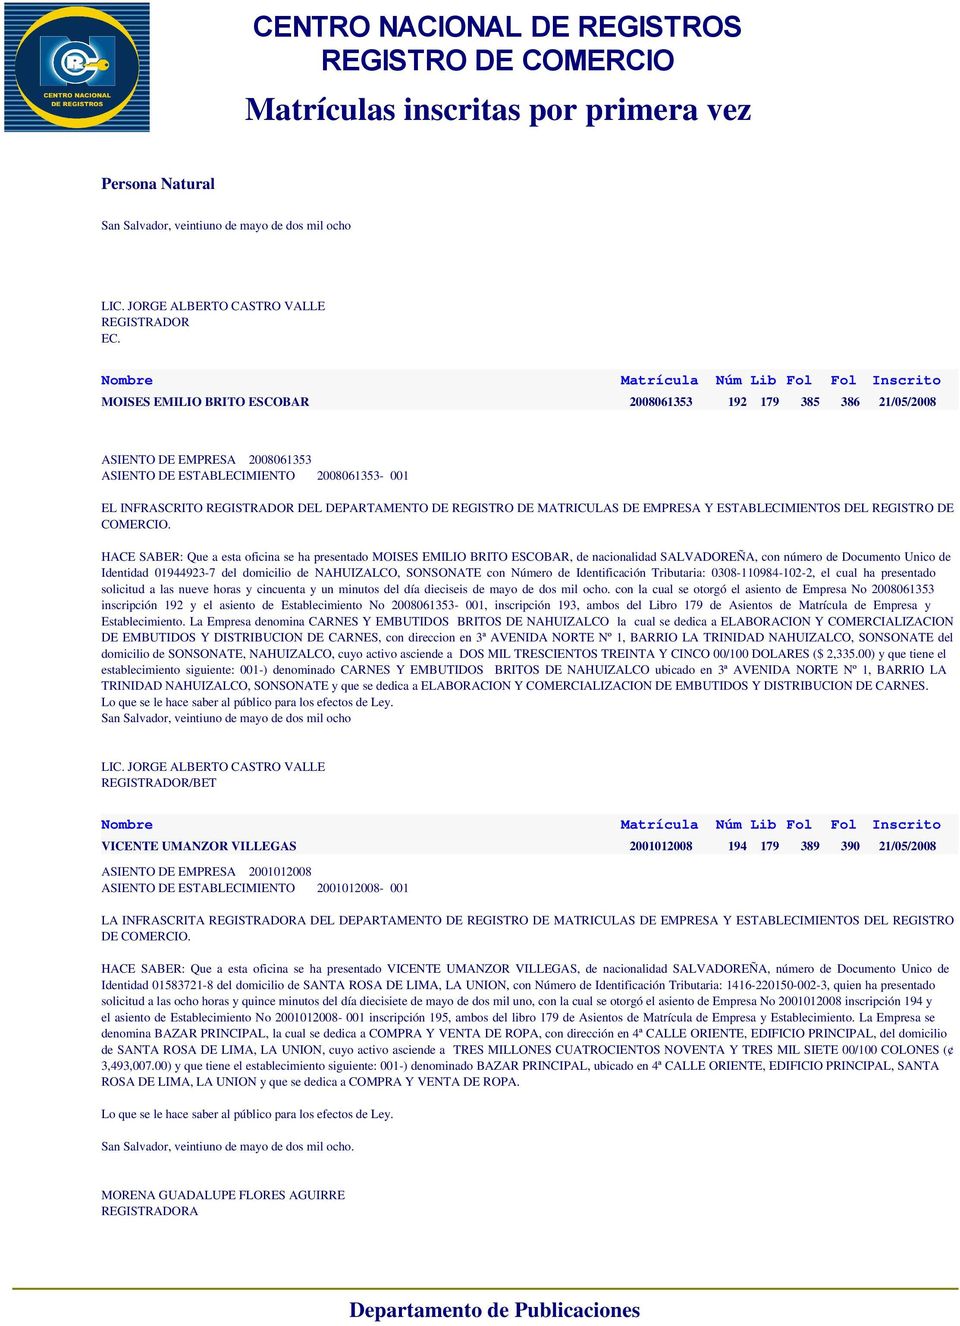 BRITO ESCOBAR, de nacionalidad SALVADOREÑA, con número de Documento Unico de Identidad 01944923-7 del domicilio de NAHUIZALCO, SONSONATE con Número de Identificación Tributaria: 0308-110984-102-2, el